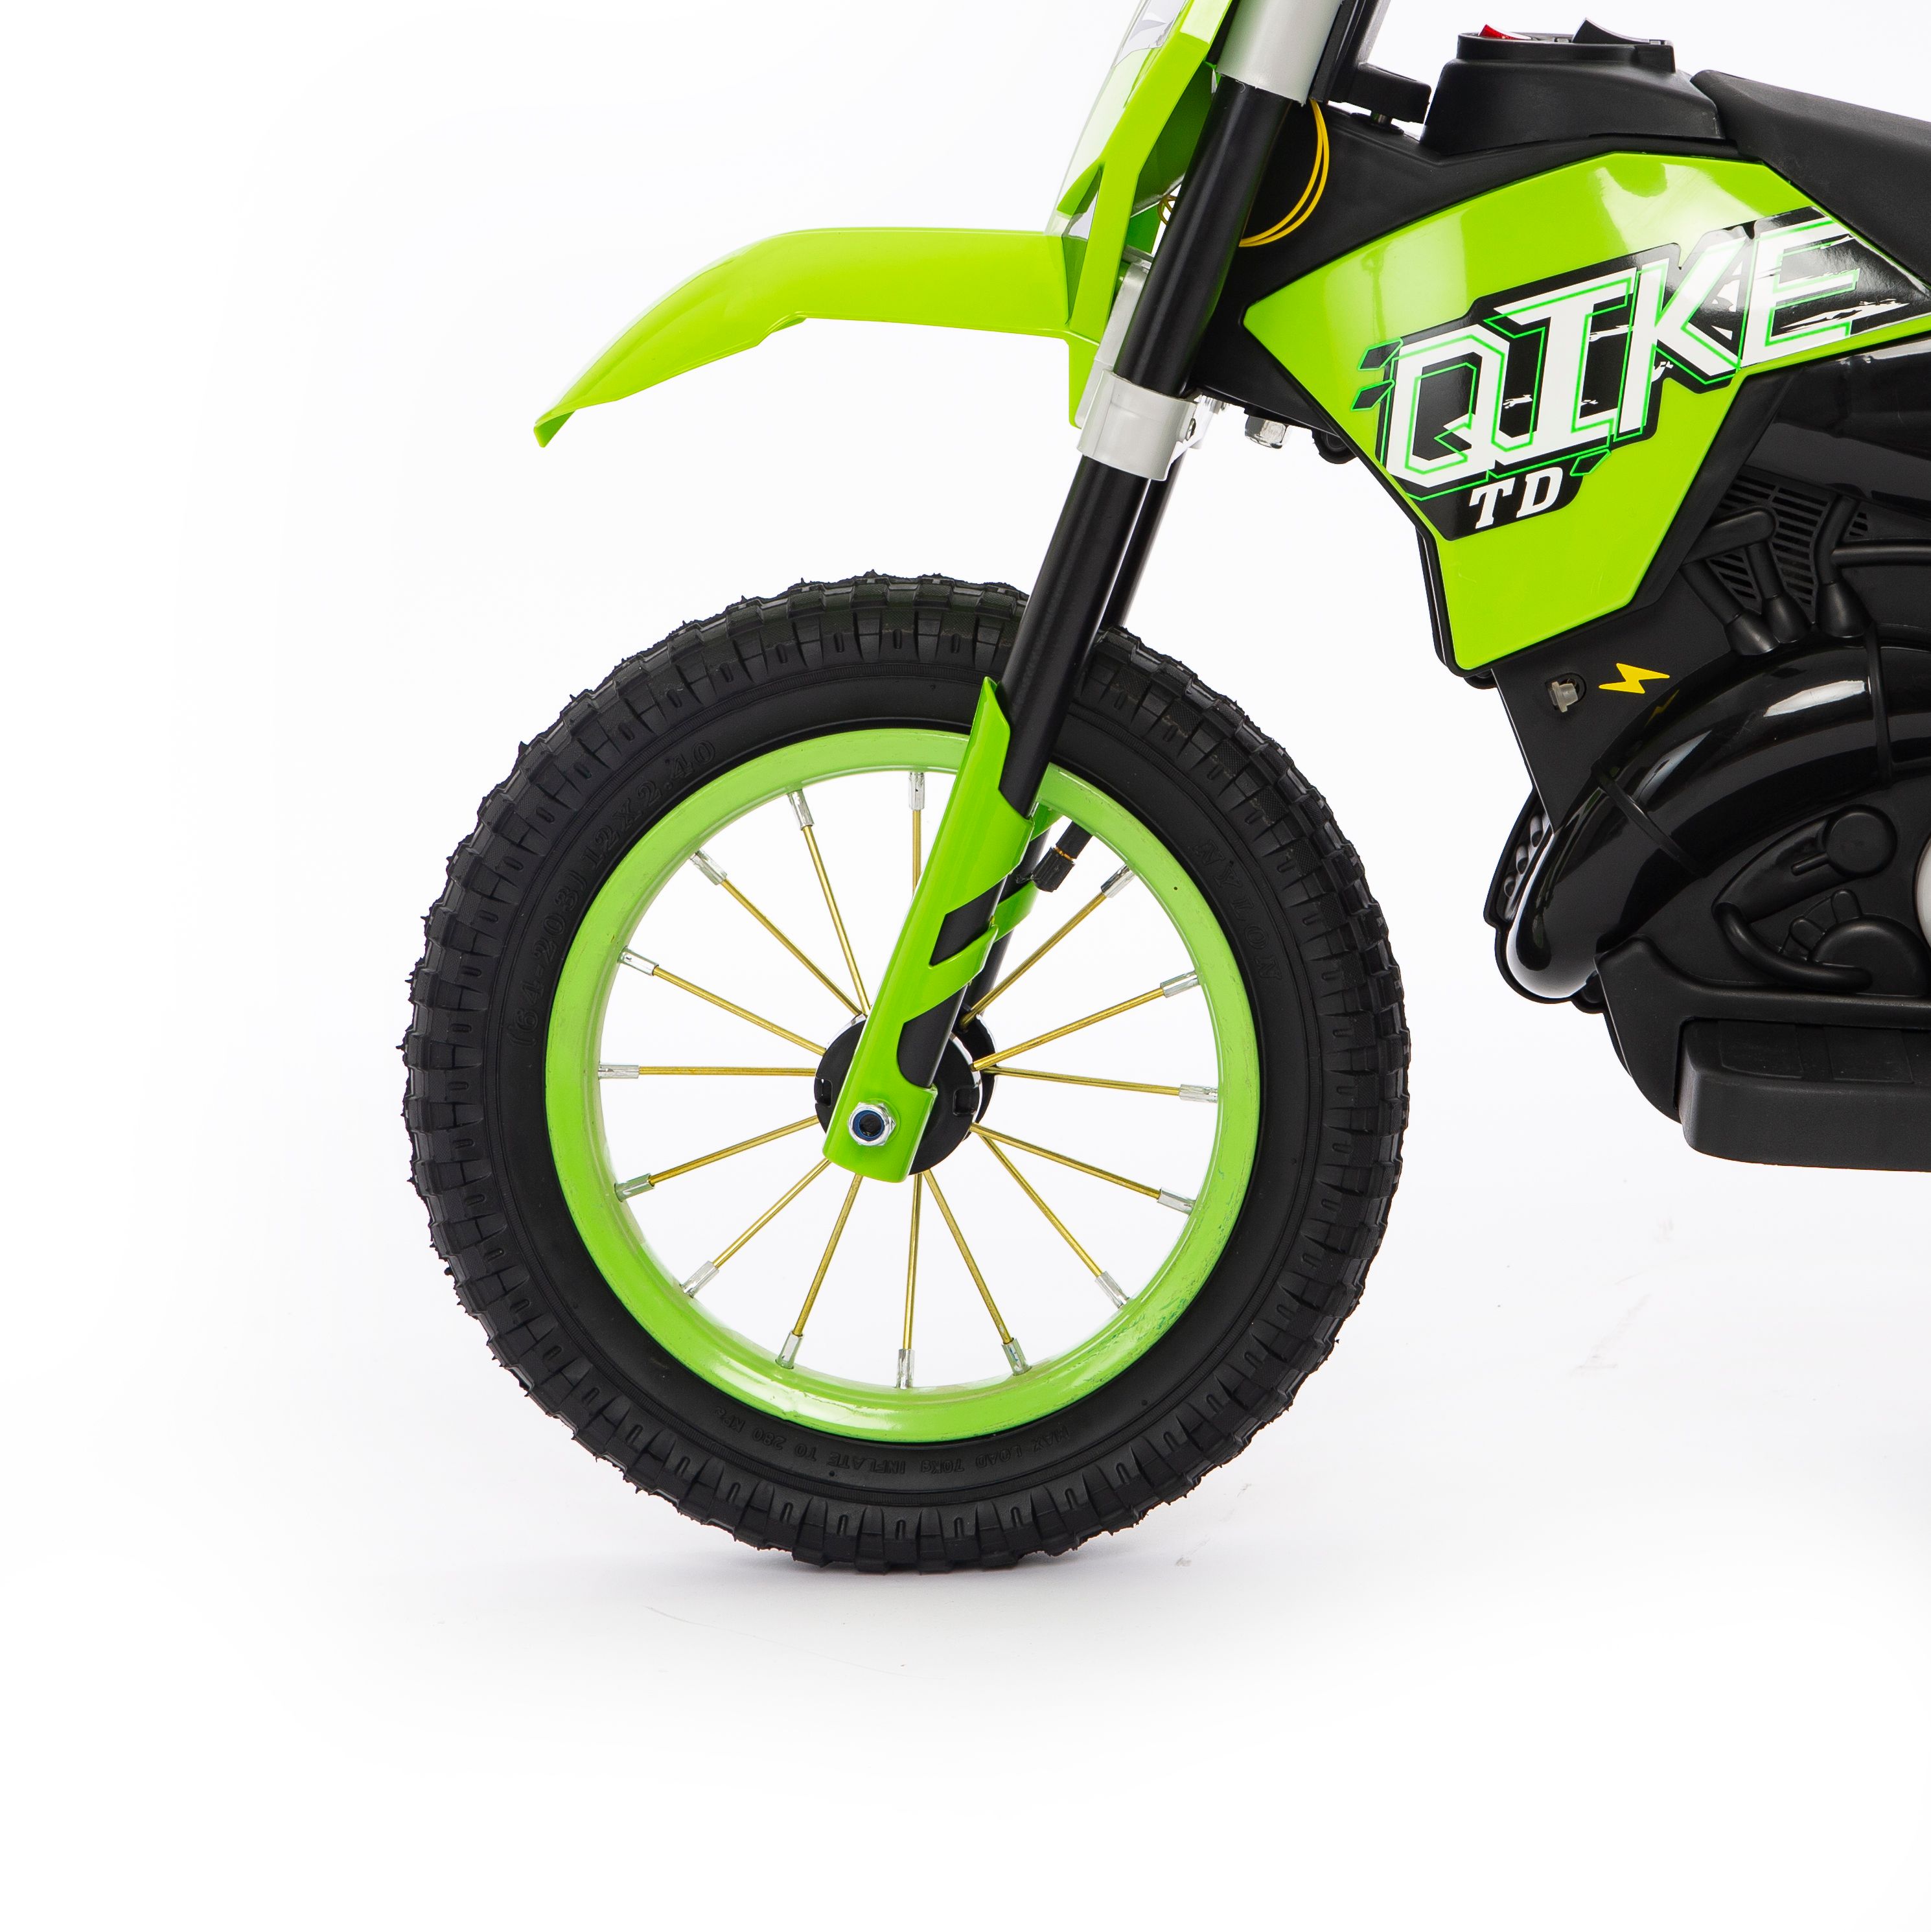 Moto Cross Verte 6 volts, moto électrique pour enfant 6 volts